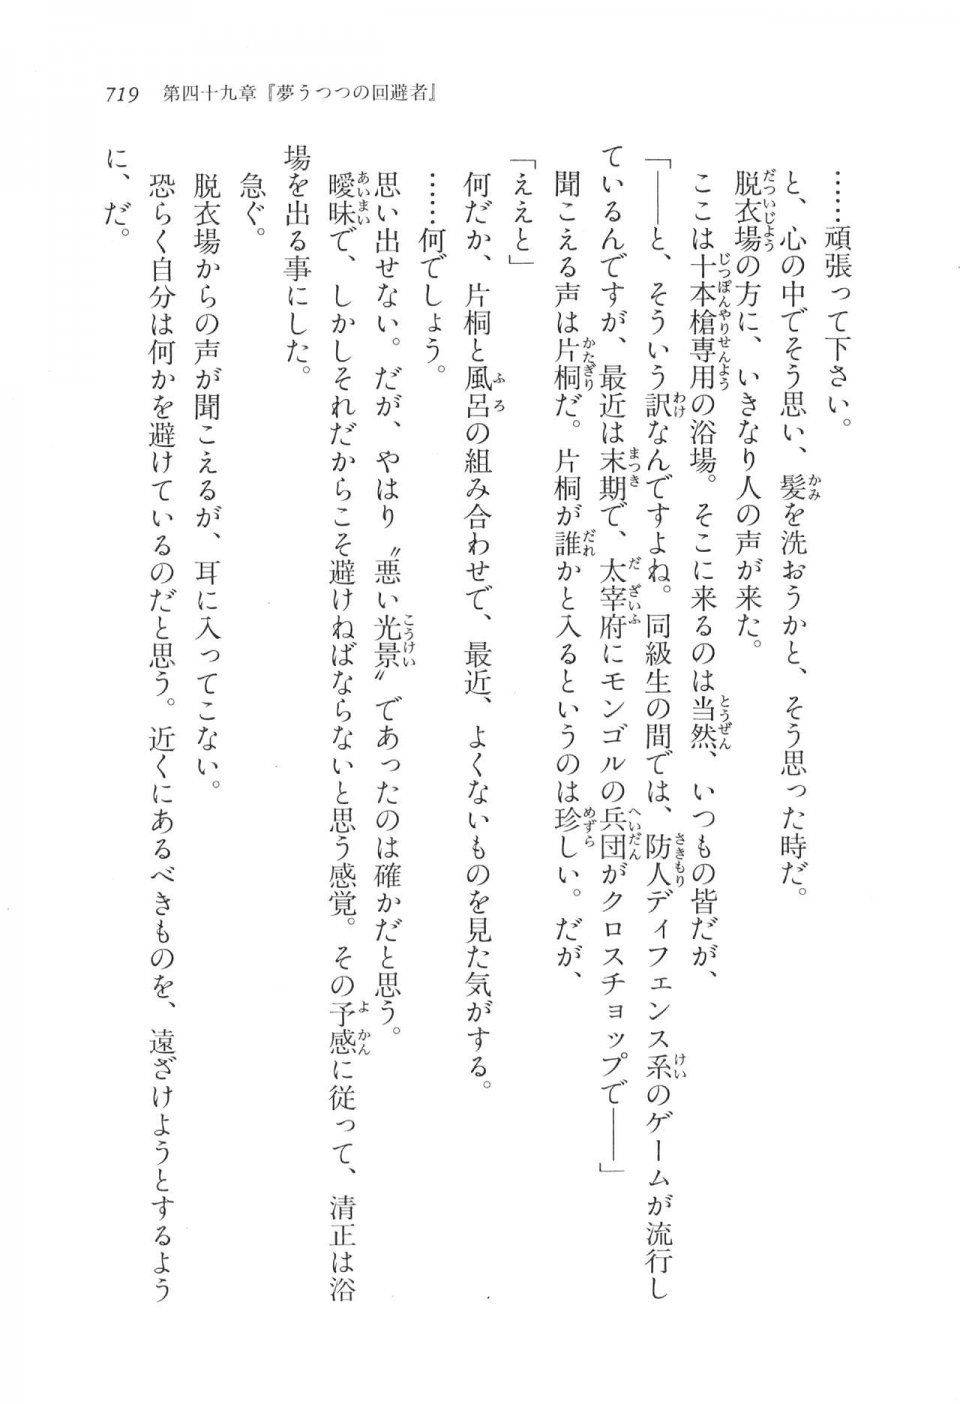 Kyoukai Senjou no Horizon LN Vol 17(7B) - Photo #721